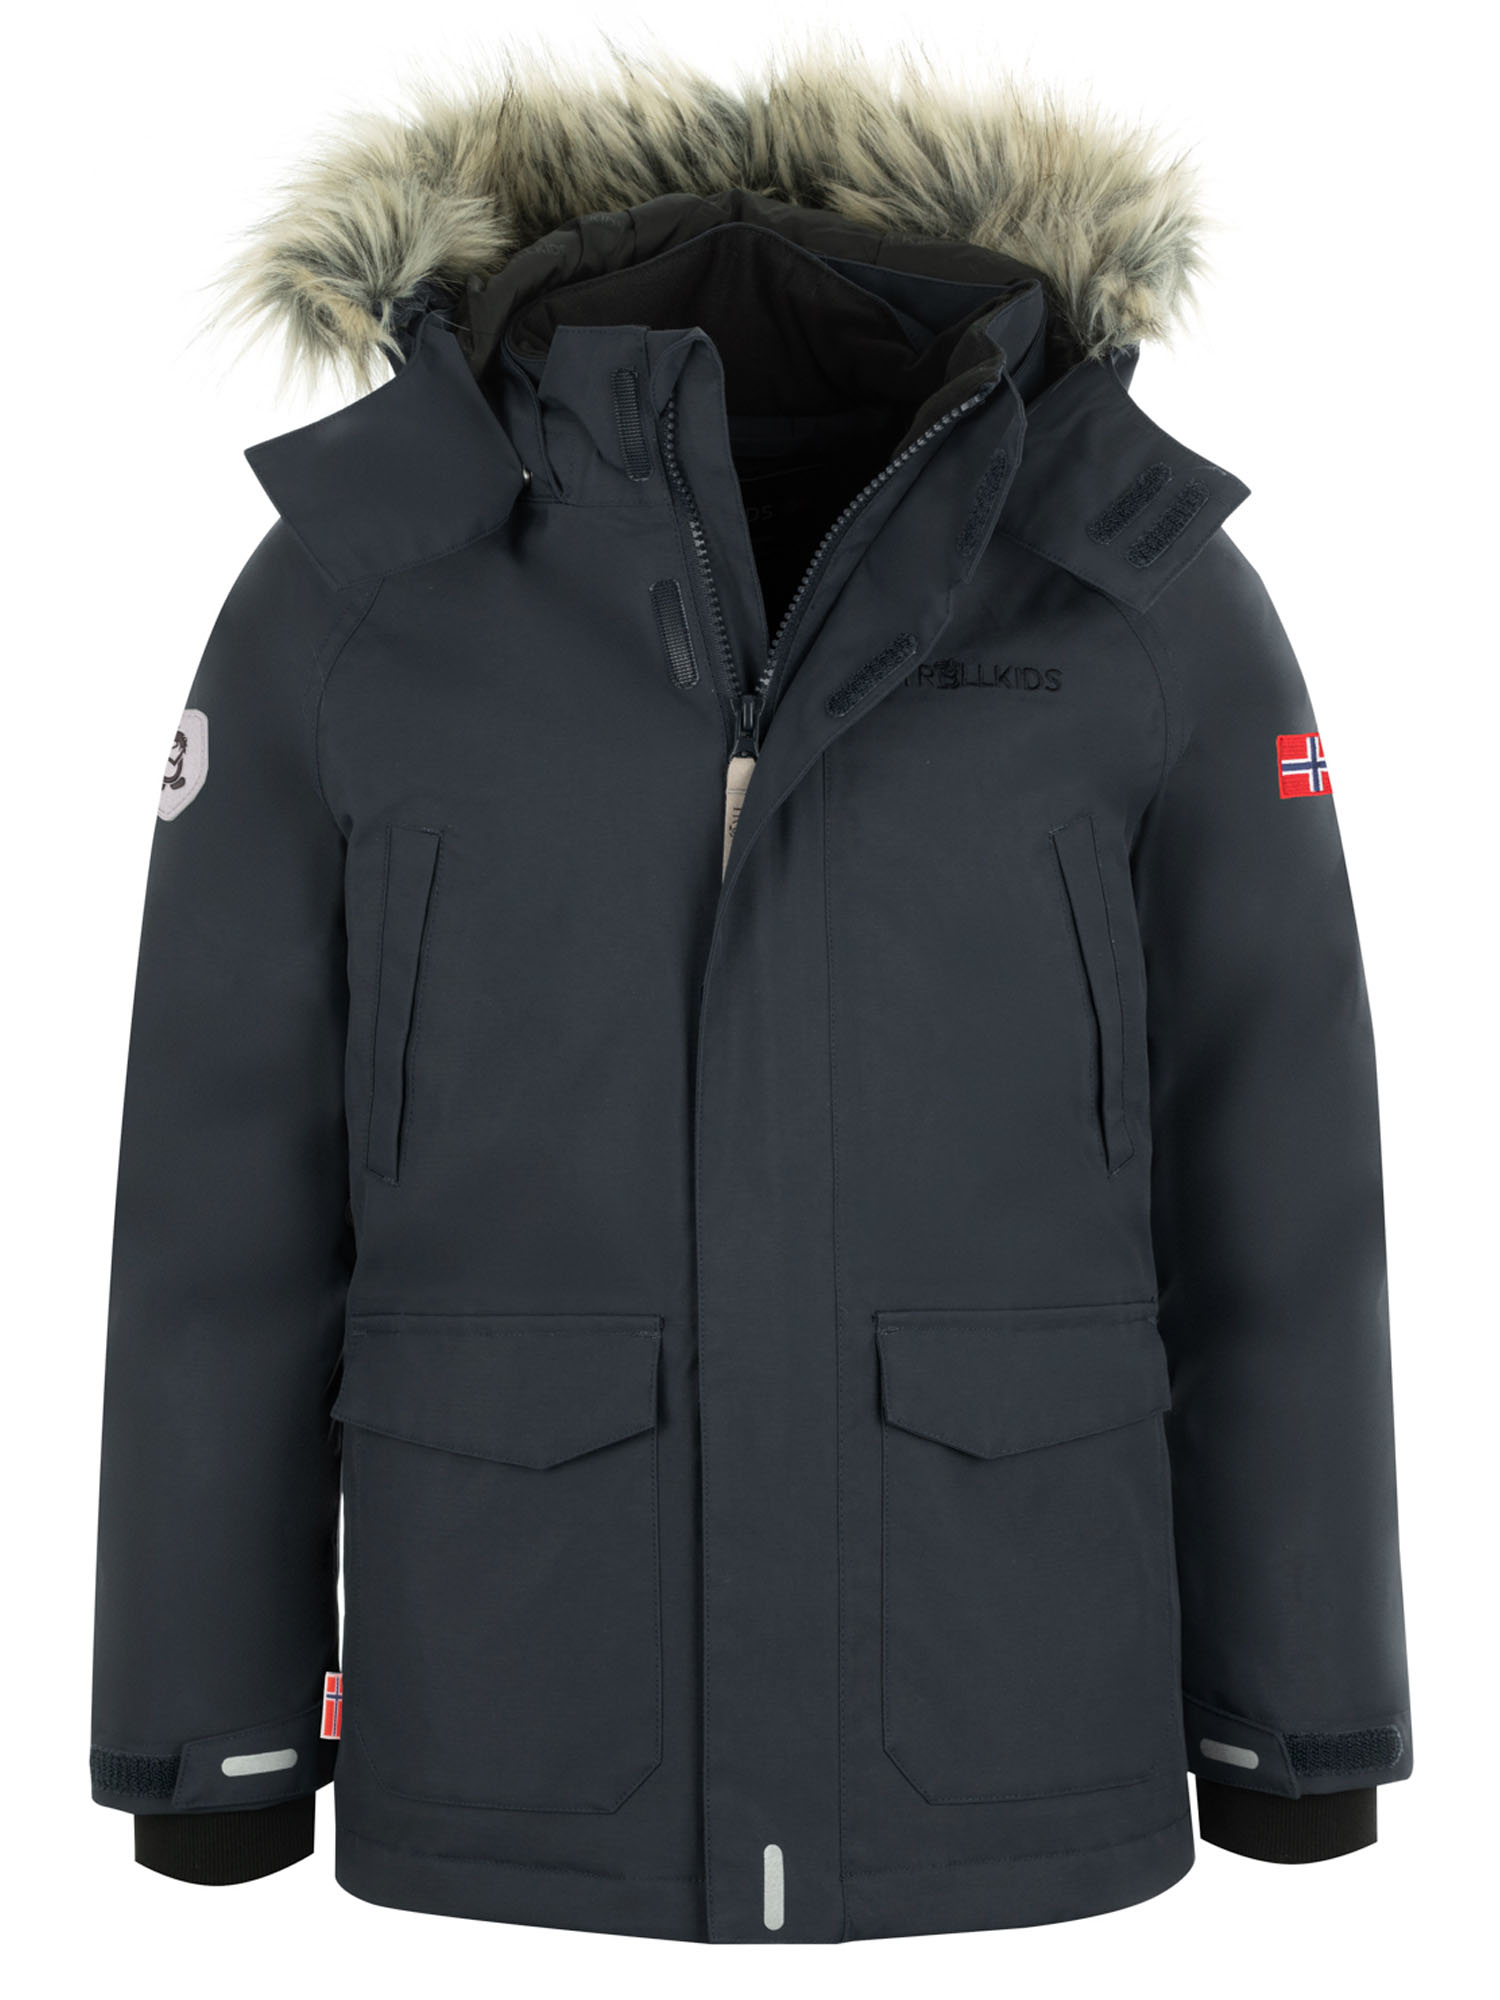 Куртка Детская Trollkids Spitsbergen Anthracite (Рост:164) куртка allsport vancouver 2219 anthracite